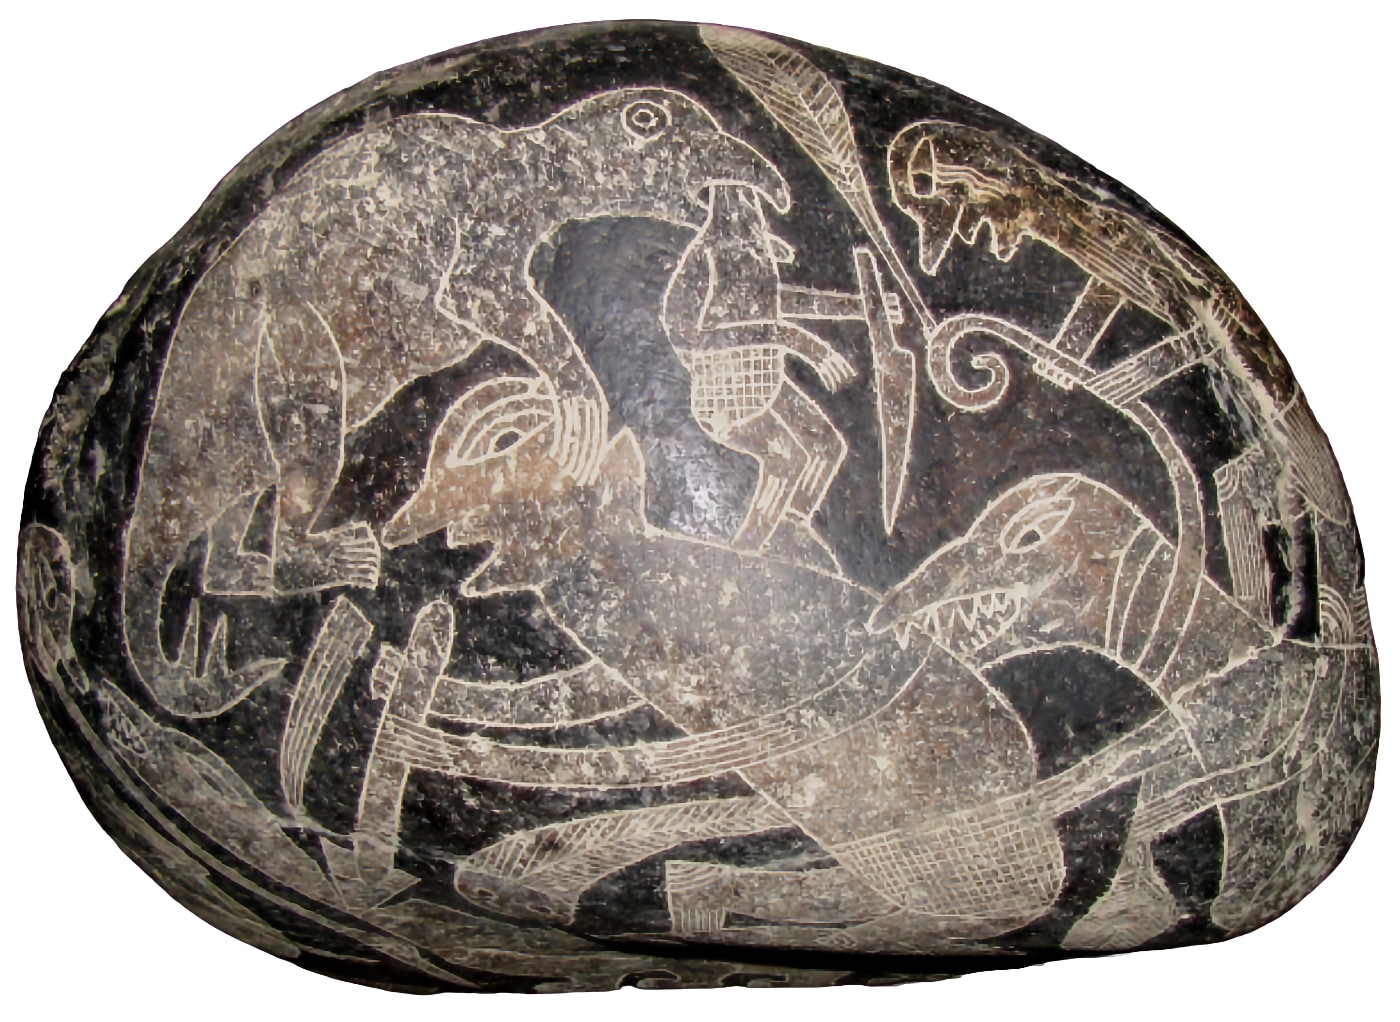 Un humano montado sobre un triceratops, en una de las piedras de Ica.